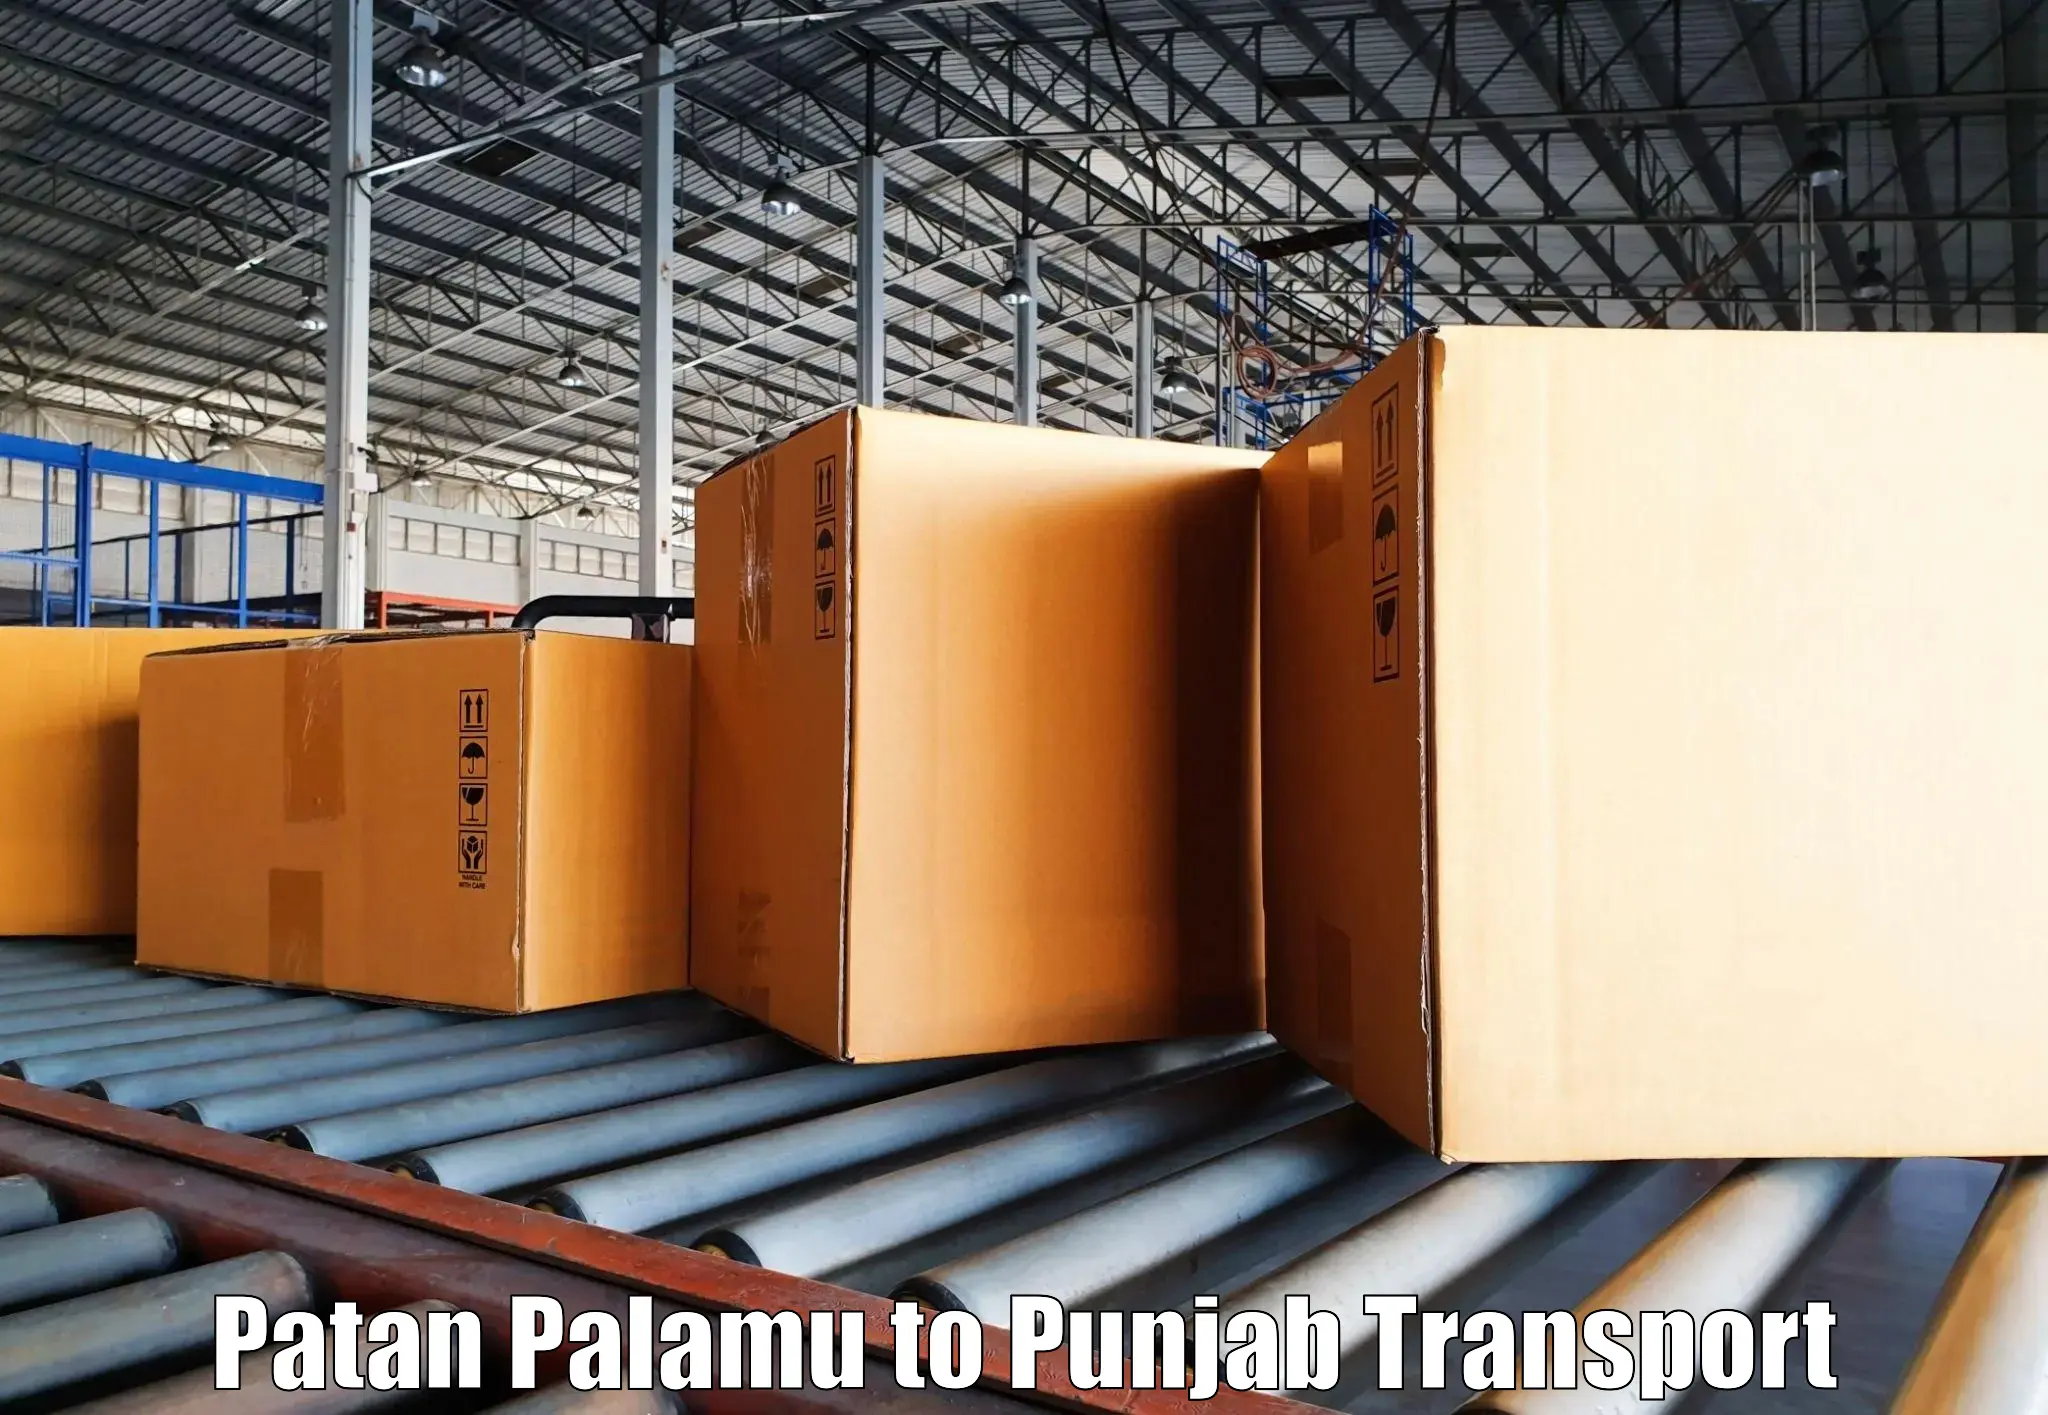 Interstate transport services Patan Palamu to Zirakpur